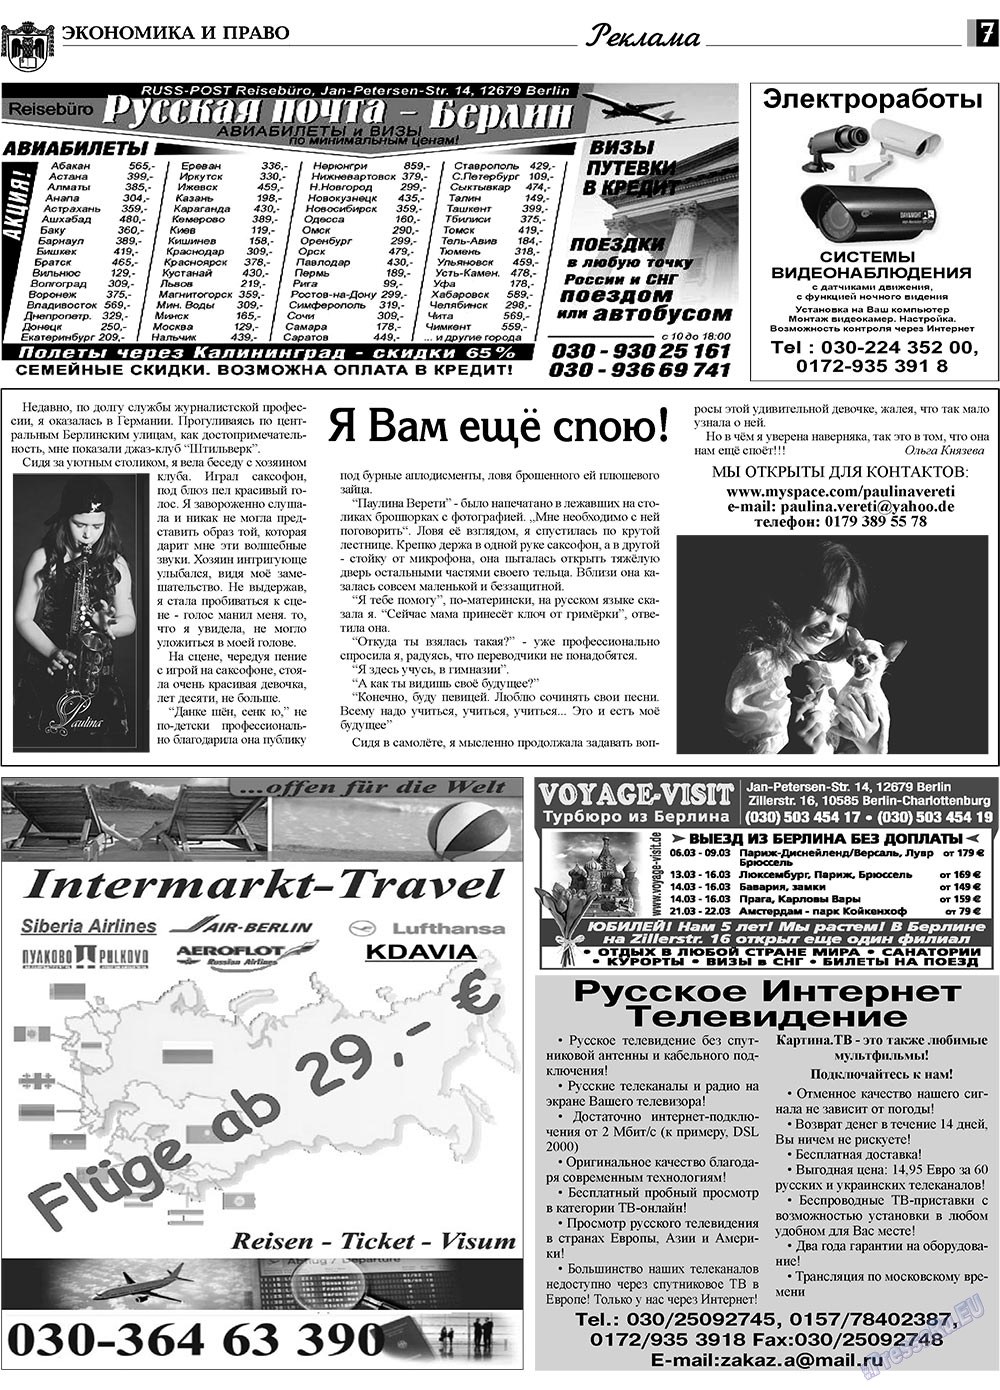 Экономика и право, газета. 2009 №3 стр.7